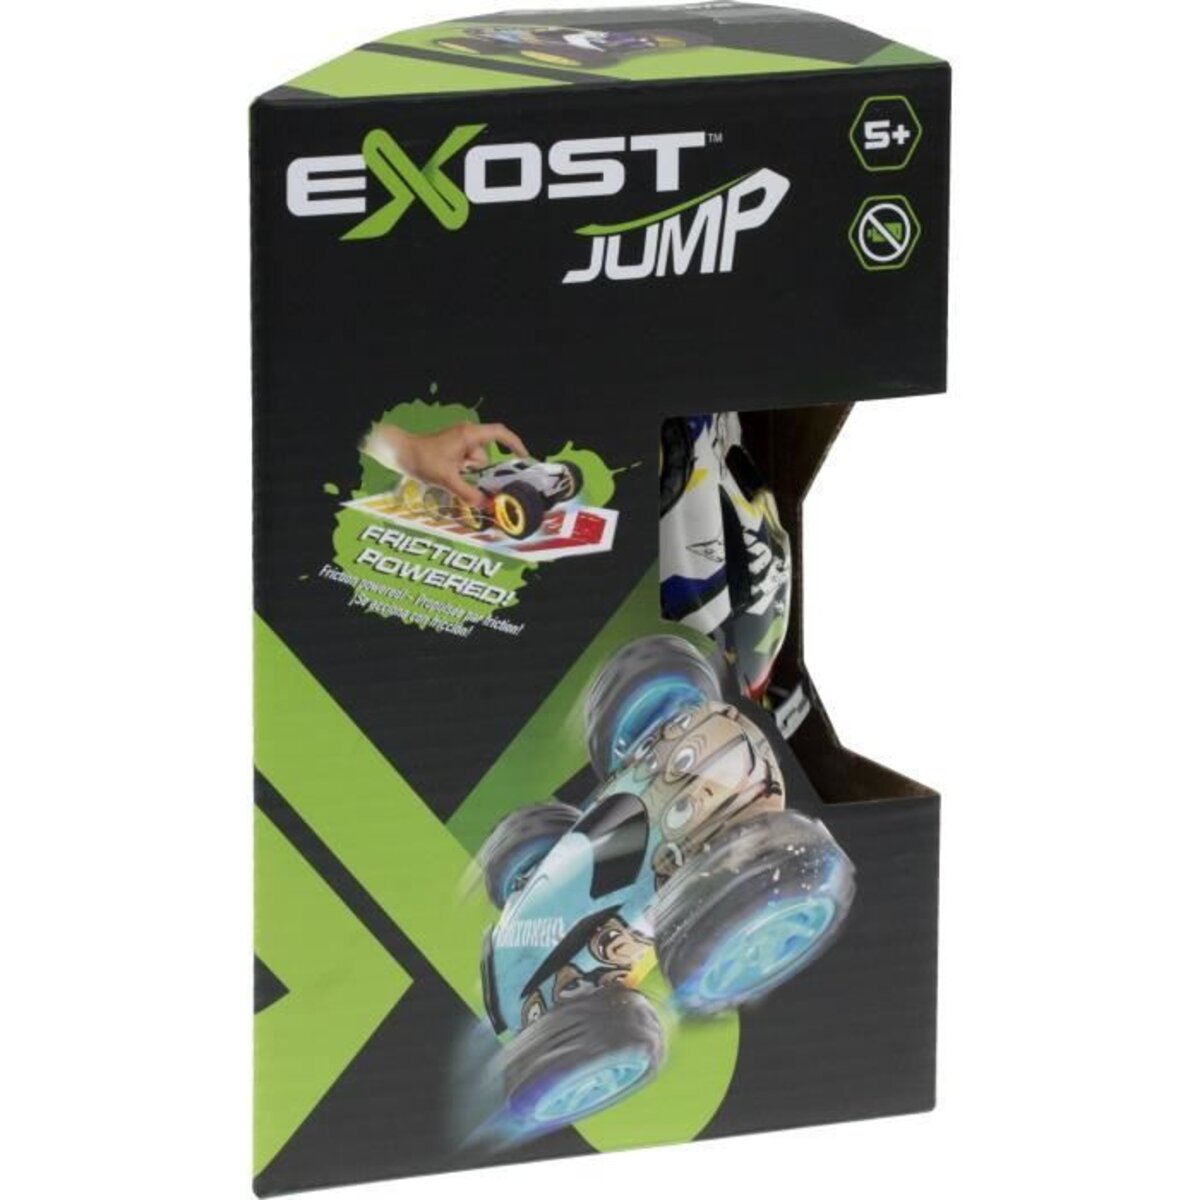 EXOST JUMP - Coffret cascades (1 voiture friction + accessoires) -  Assortiment - La Poste